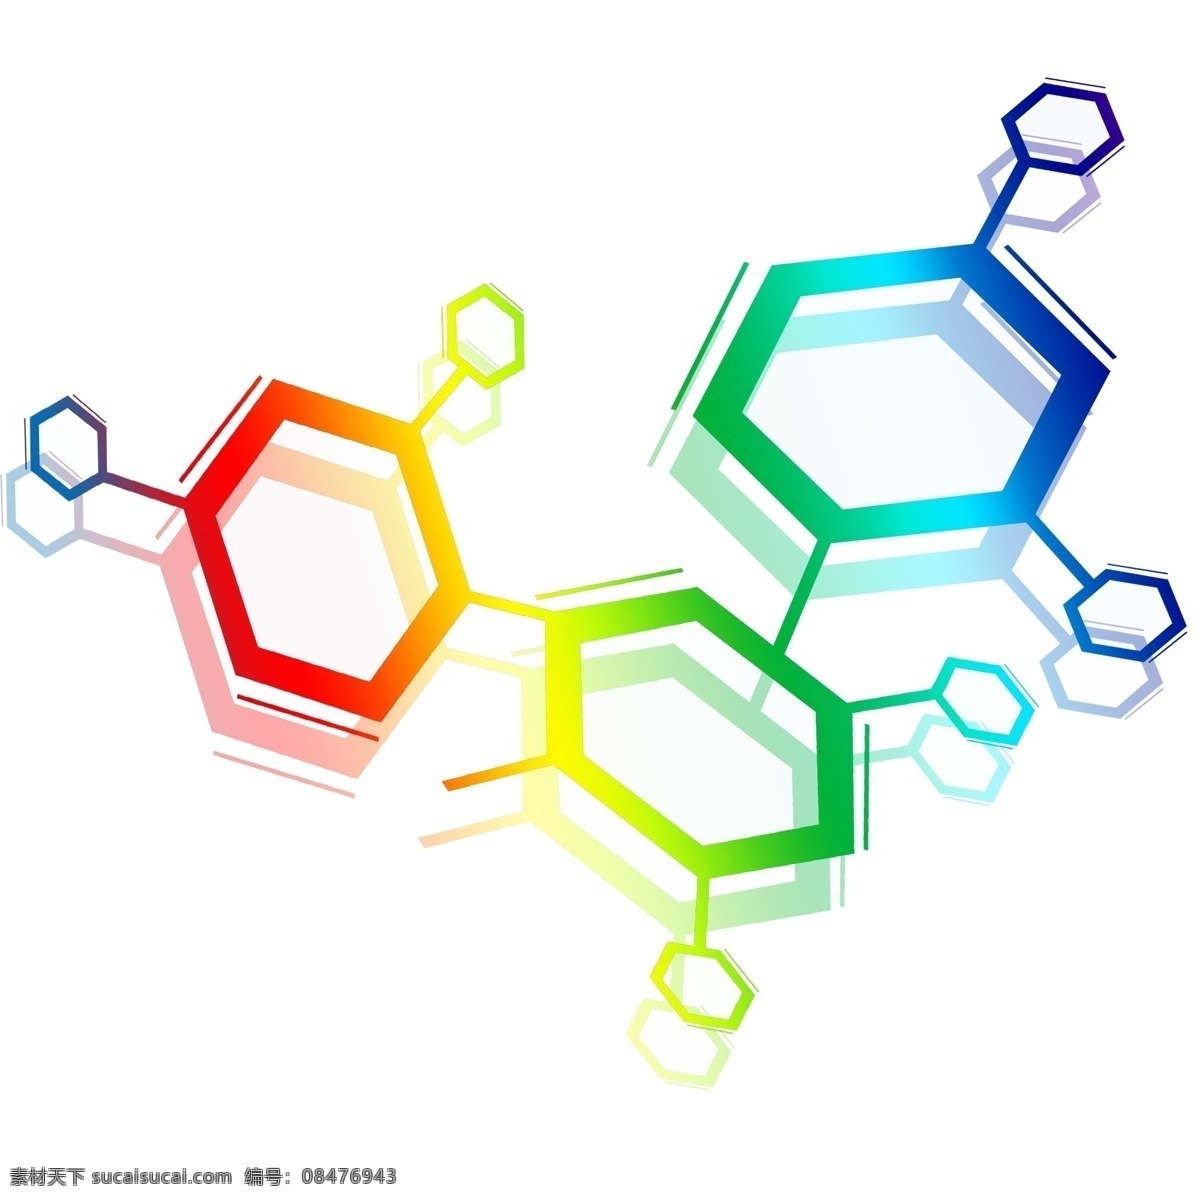 化学 分子 结构图 插画 化学教学 化学药品 分子结构图 分子式 化学反应 做实验